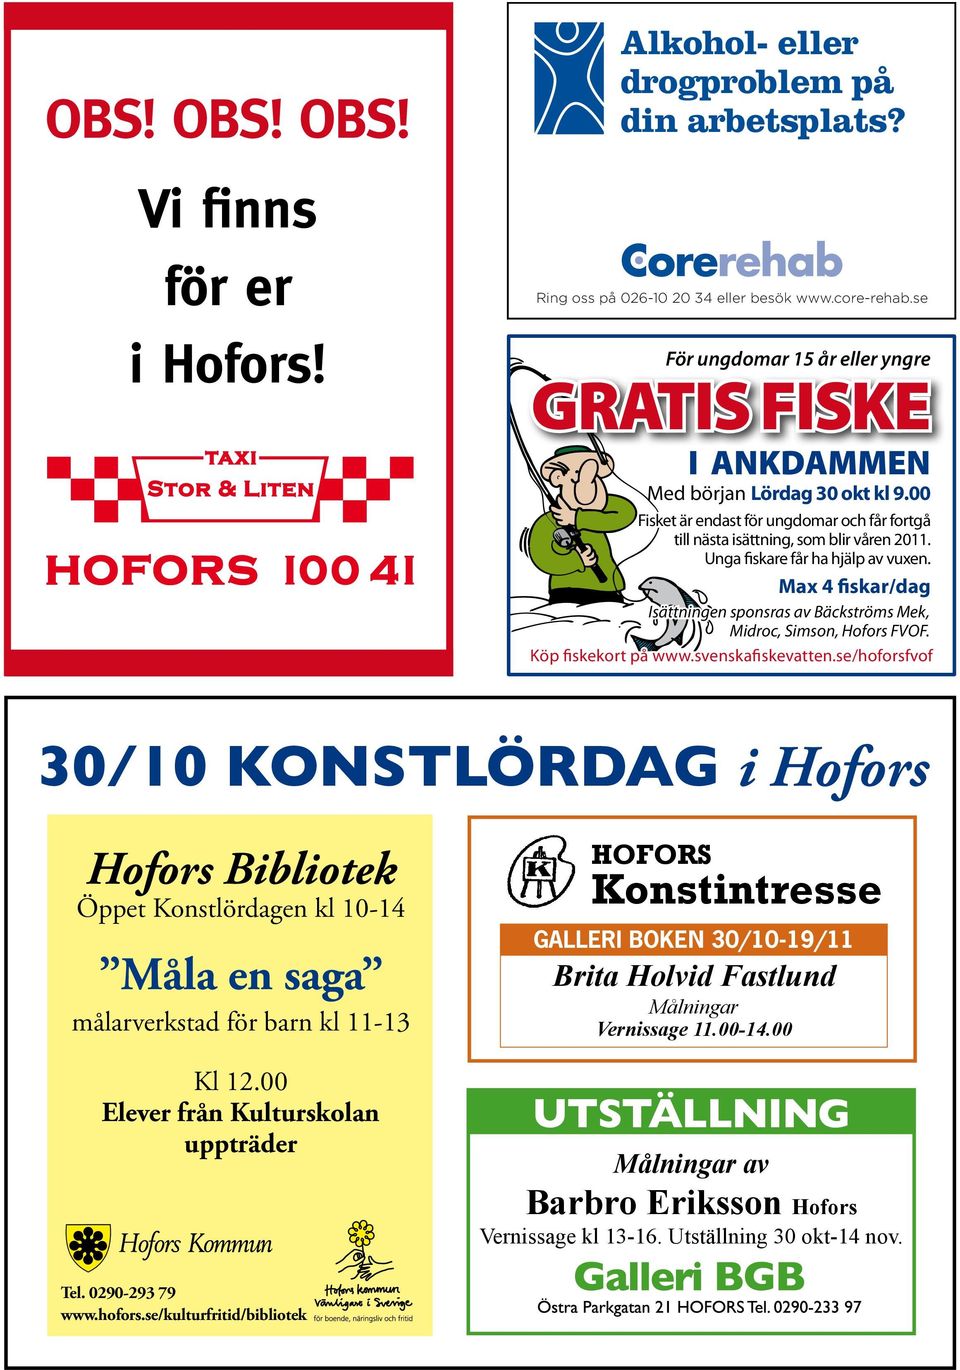 Unga fiskare får ha hjälp av vuxen. Max 4 fiskar/dag Isättningen sponsras av Bäckströms Mek, Midroc, Simson, Hofors FVOF. Köp fiskekort på www.svenskafiskevatten.